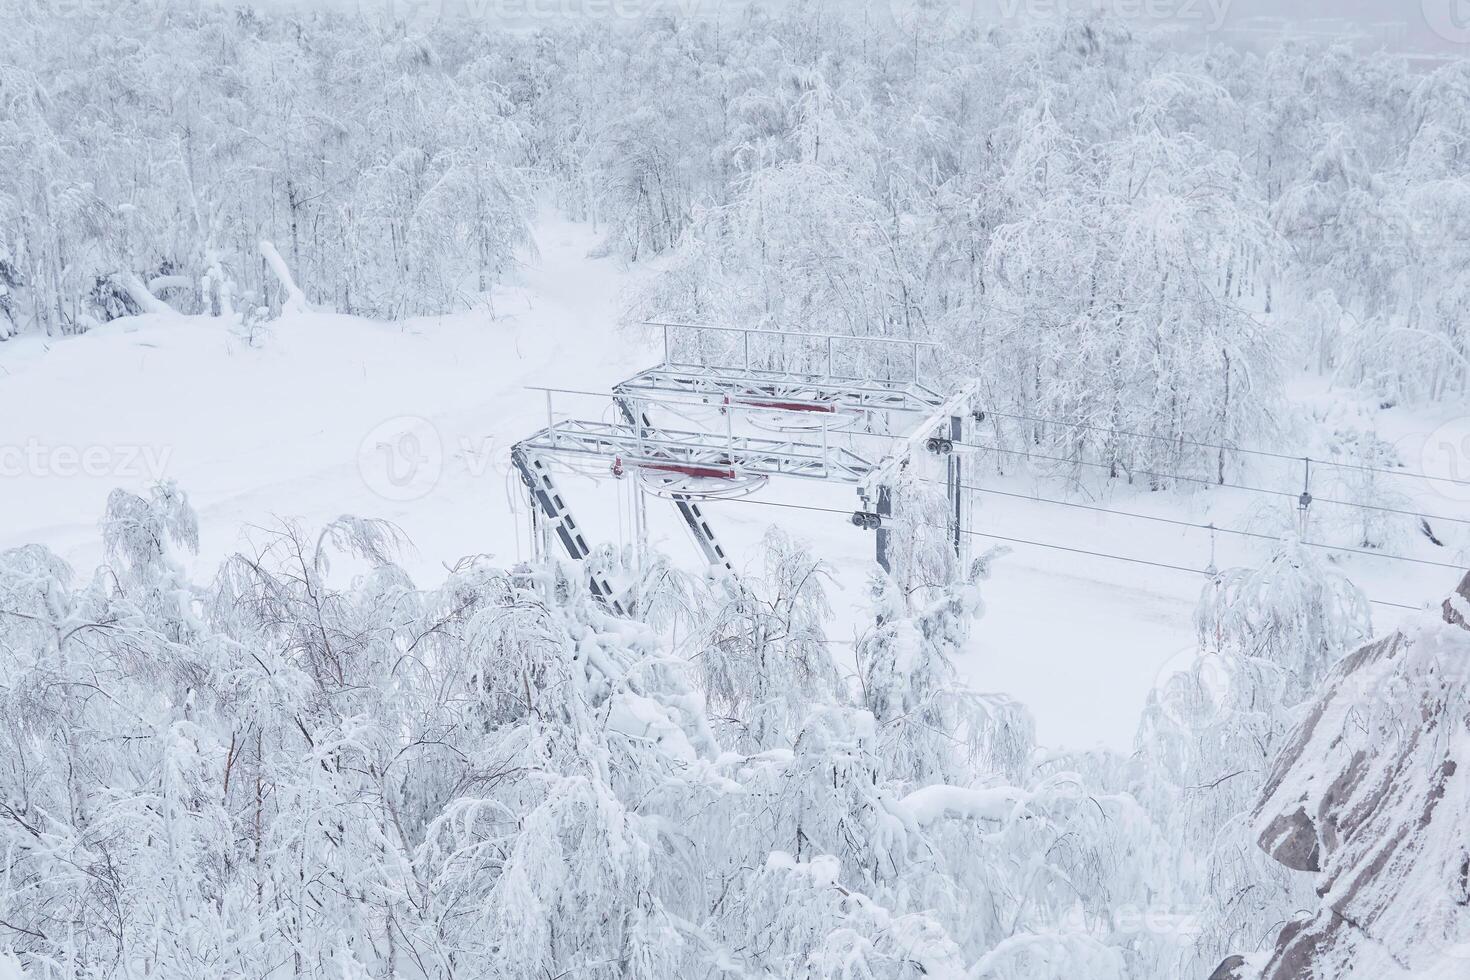 fim estação do a esqui lift em uma coberto de neve morro entre gelado árvores foto